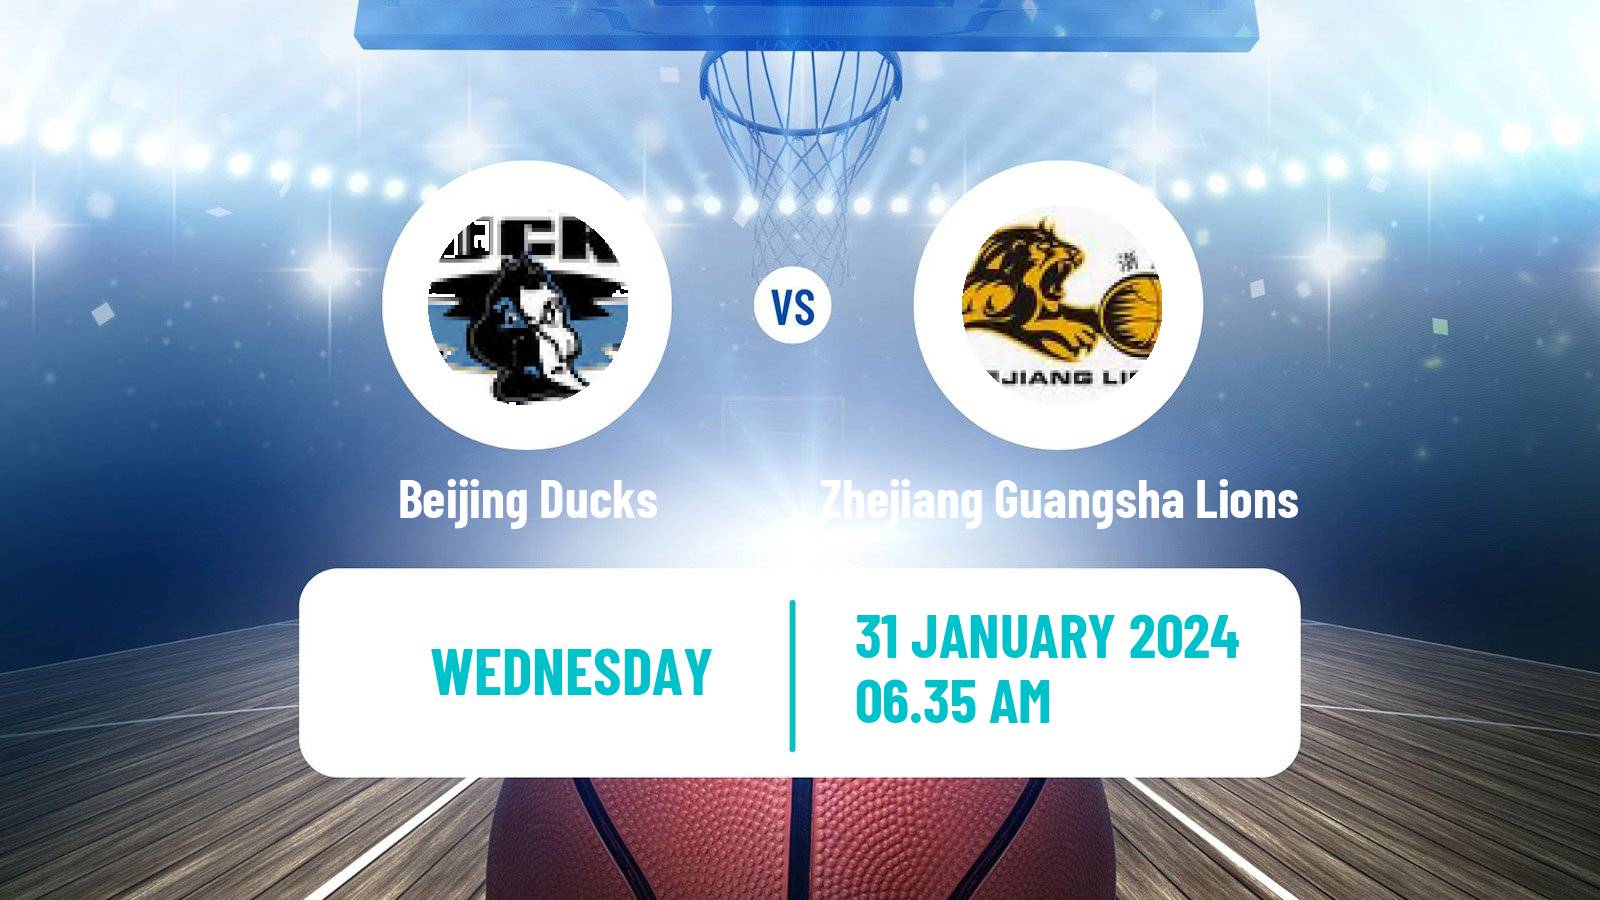 Basketball CBA Beijing Ducks - Zhejiang Guangsha Lions